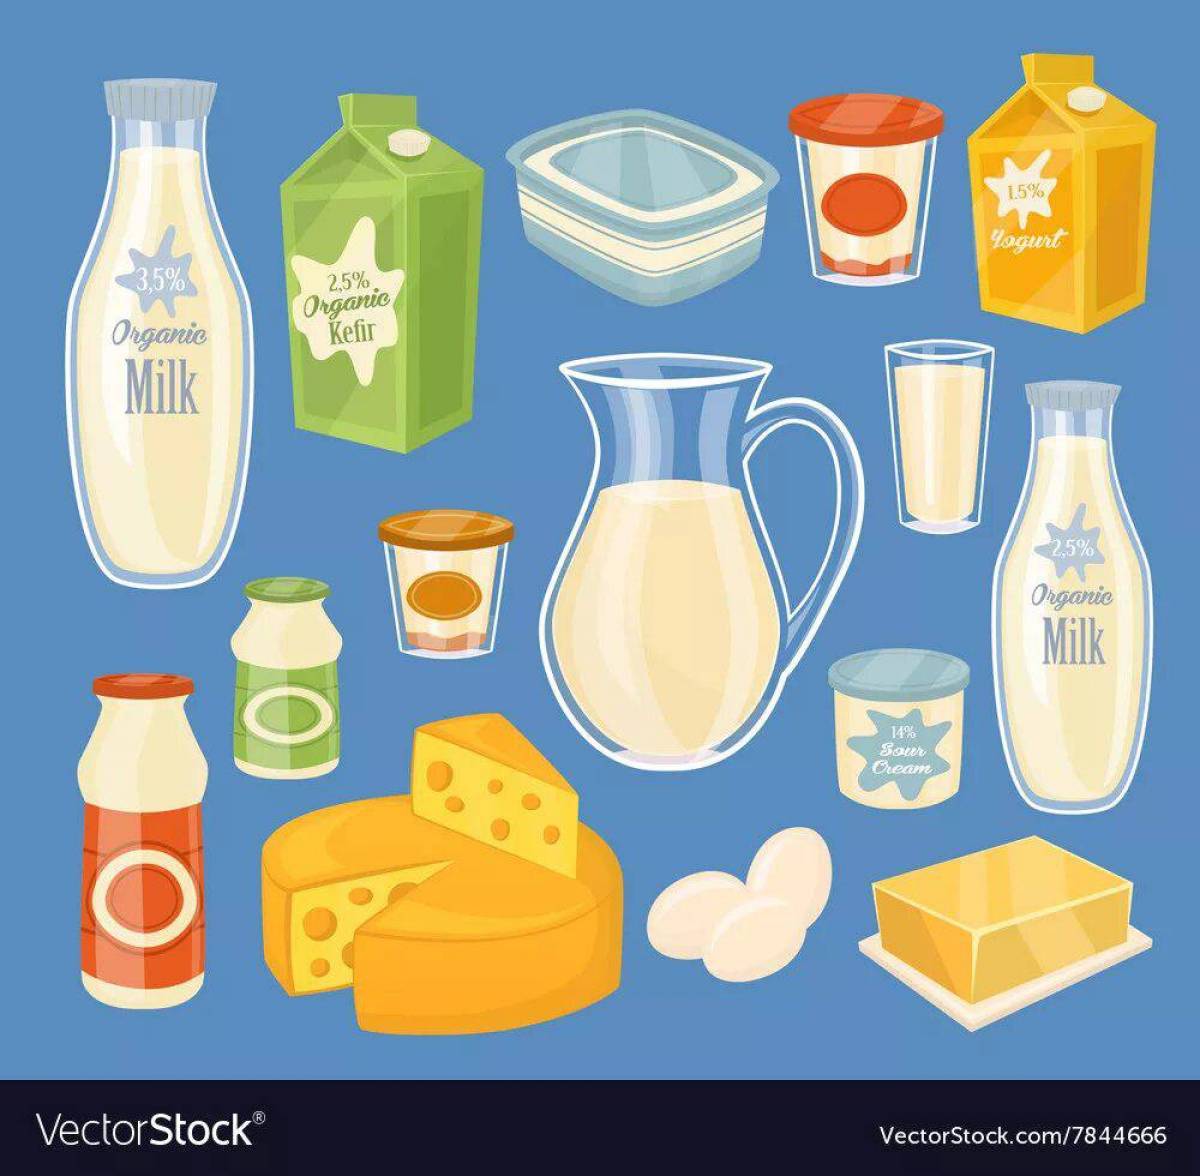 Молочные продукты для детей #35